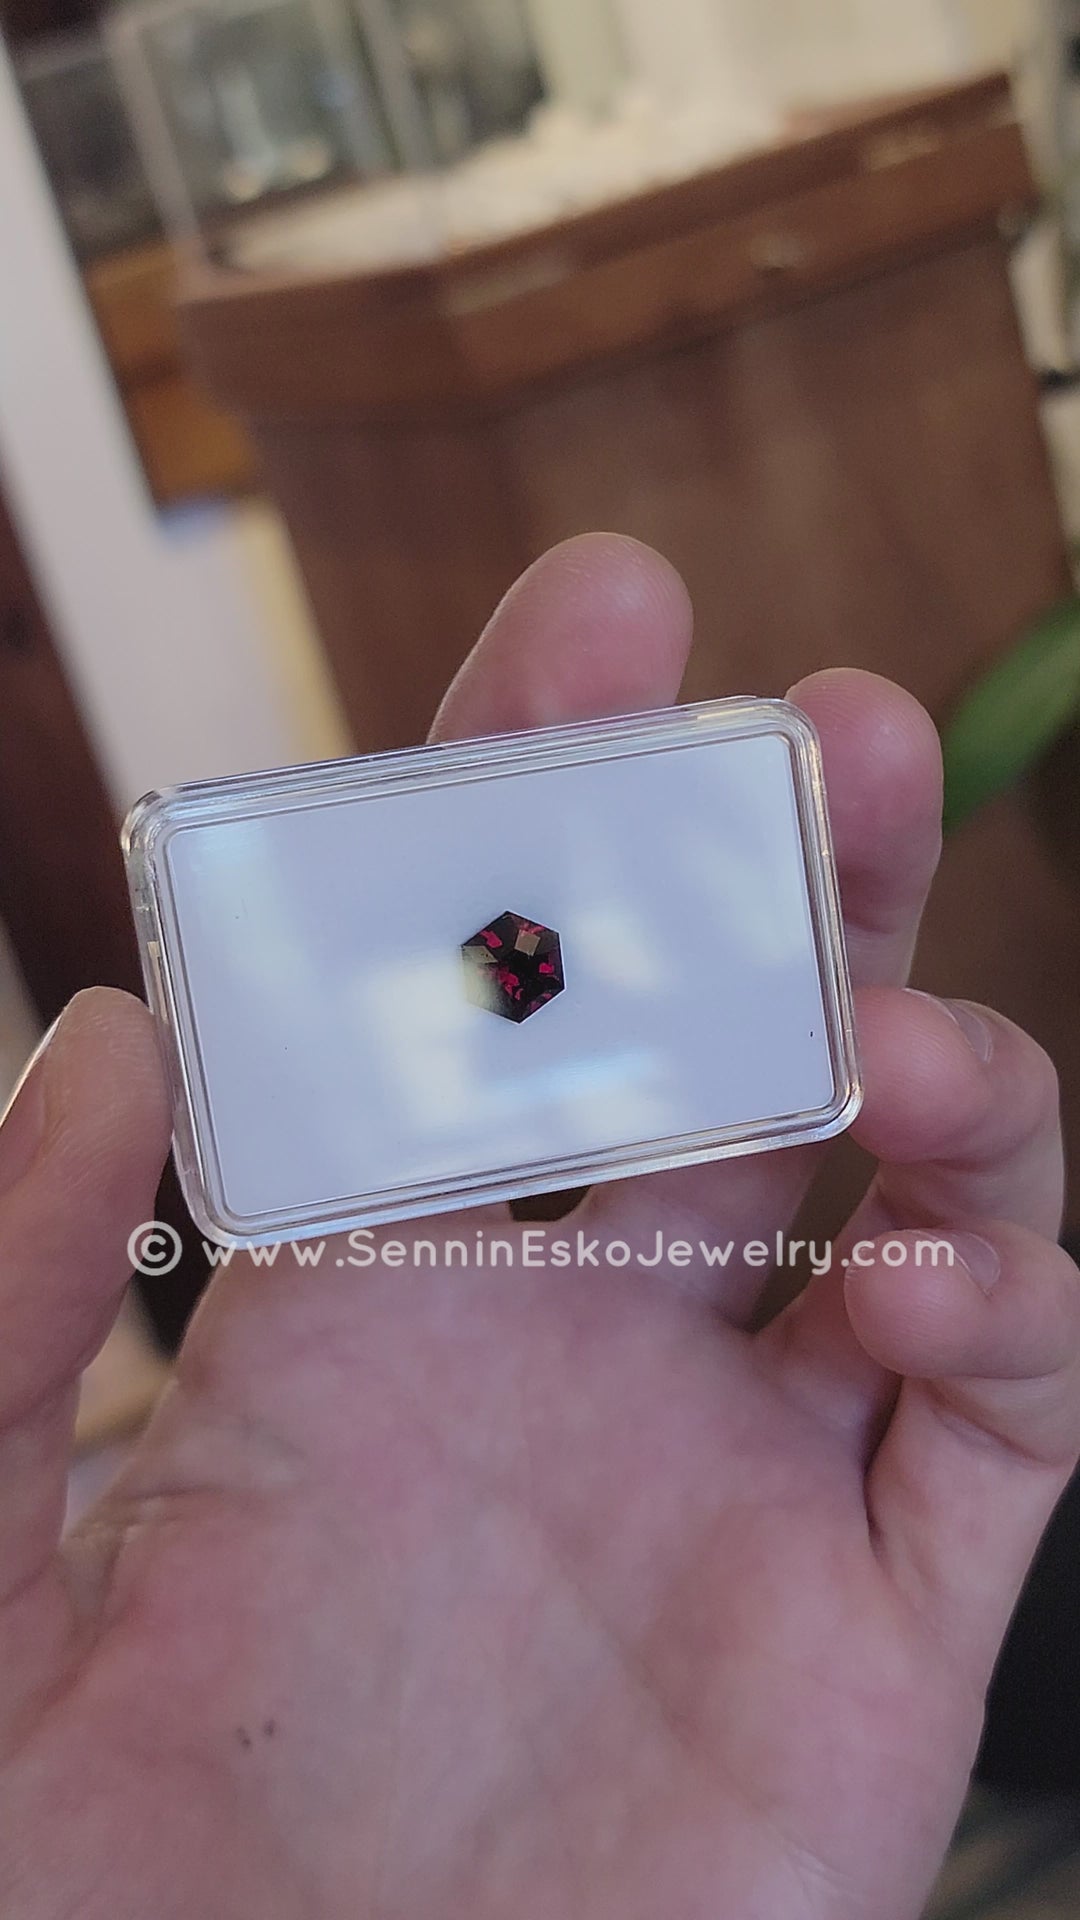 3.4 Carat Deep Red Garnet Hexagon - 9.3x8.1mm